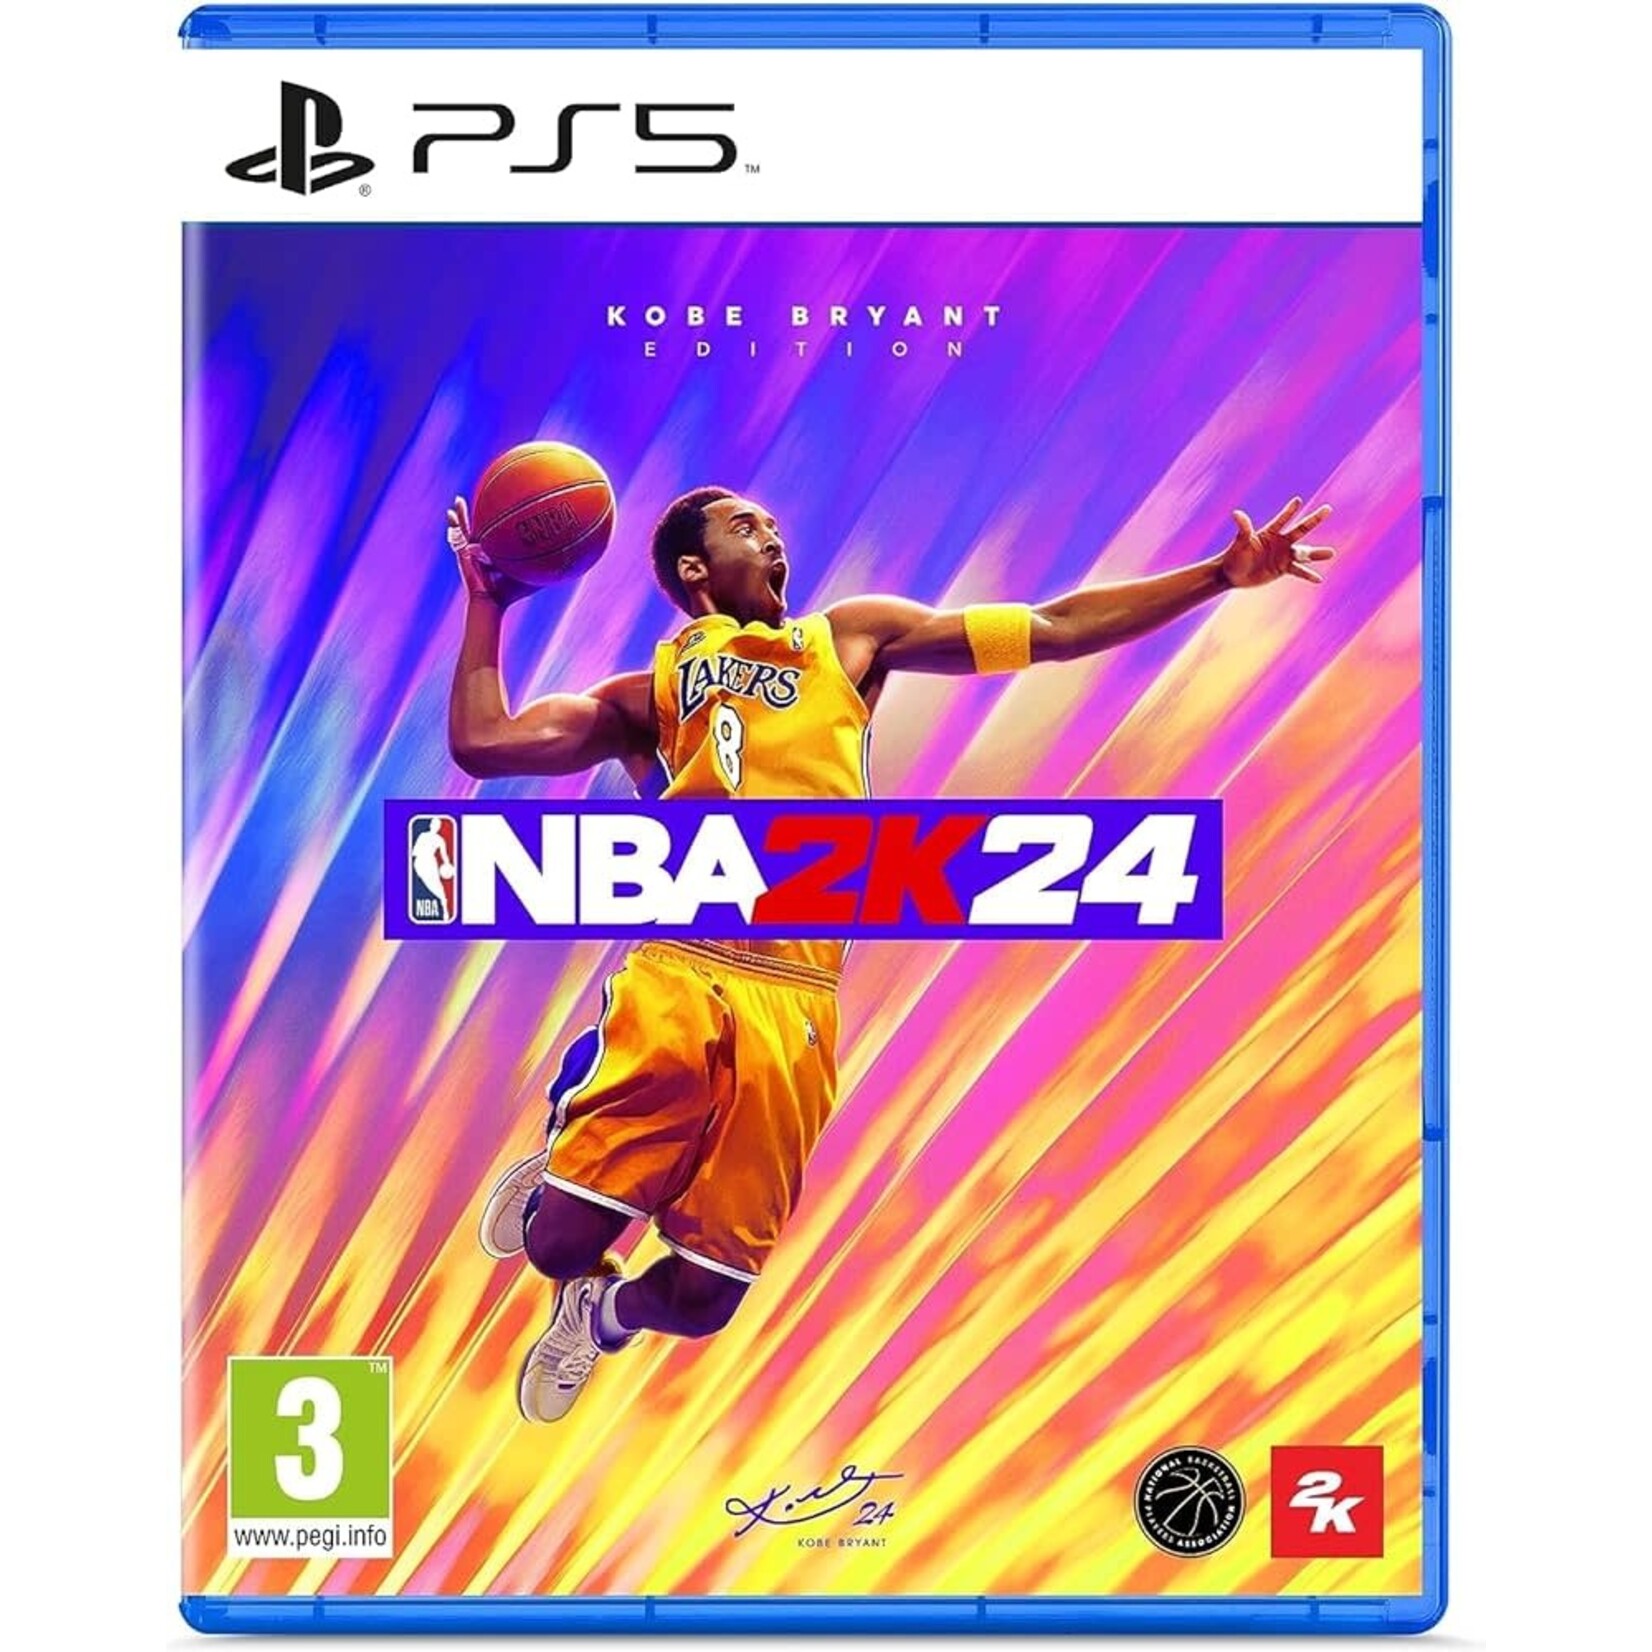 PS5 PS5 NBA 2K24 Kobe Bryant Edition